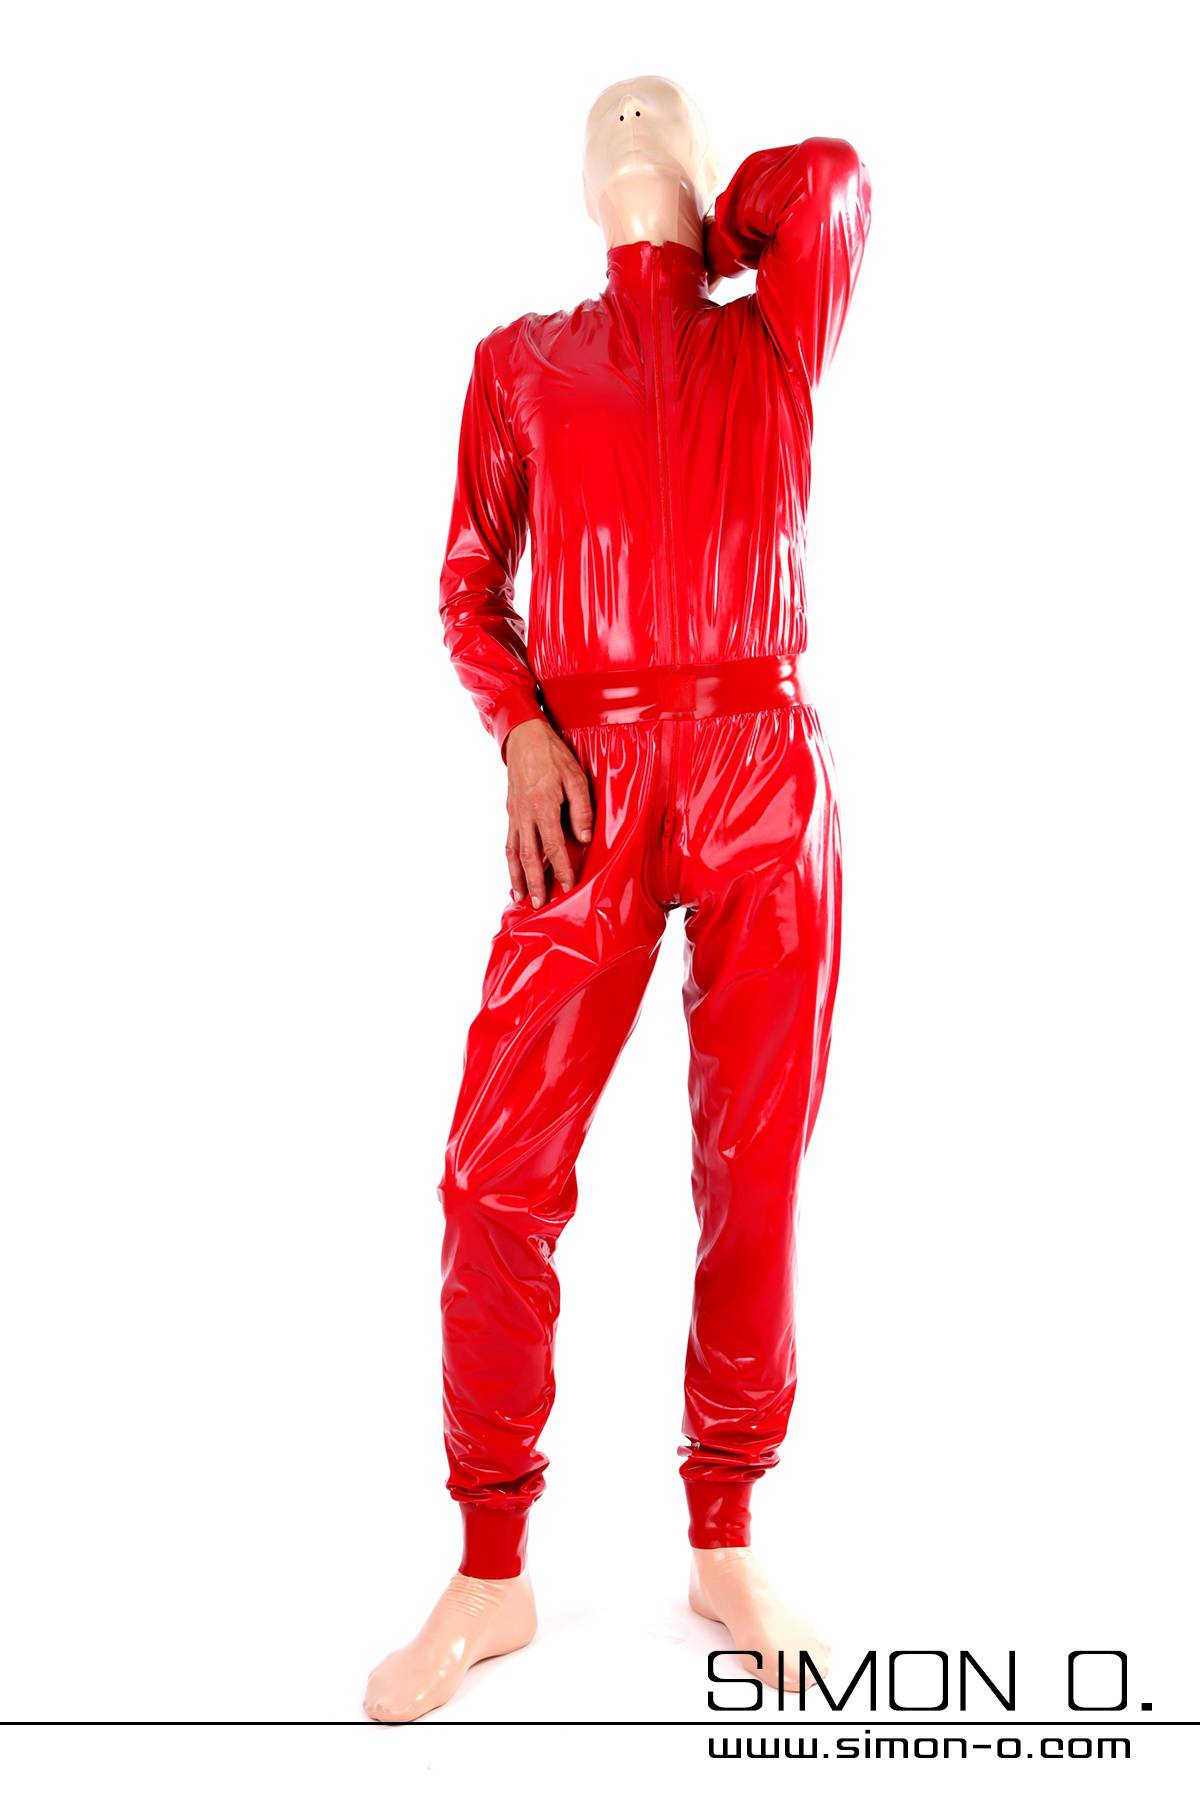 Ein Mann mit einer Latex Maske trägt einen lockeren Latex Anzug in glänzenden Rot von hinten gesehen.